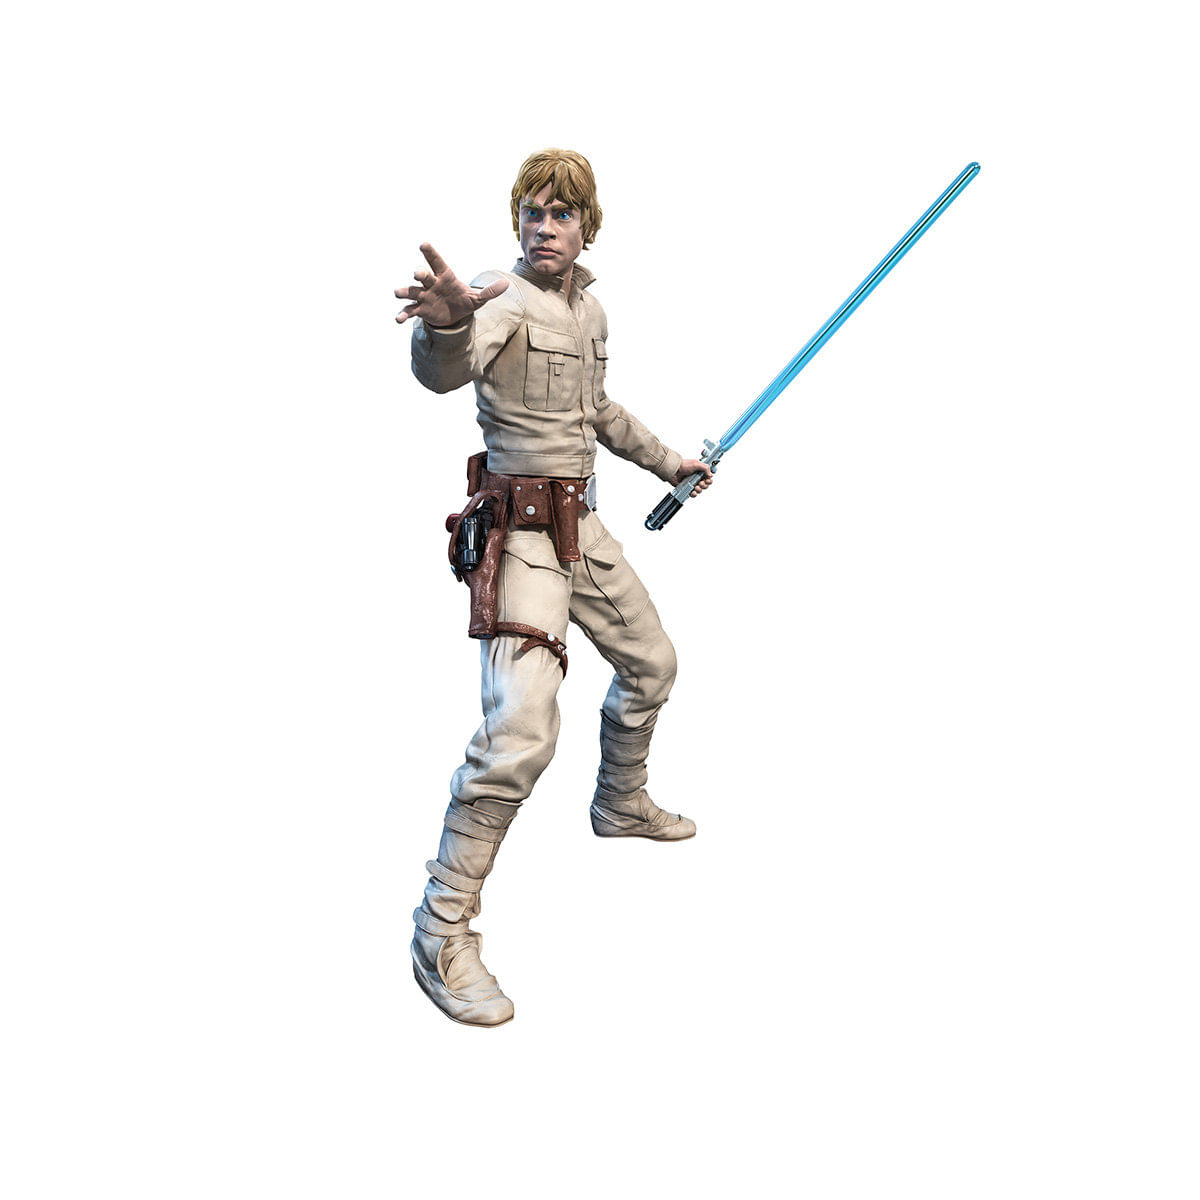 6094139_Boneco-Luke-Skywalker-Hasbro-Star-Wars_2_Zoom